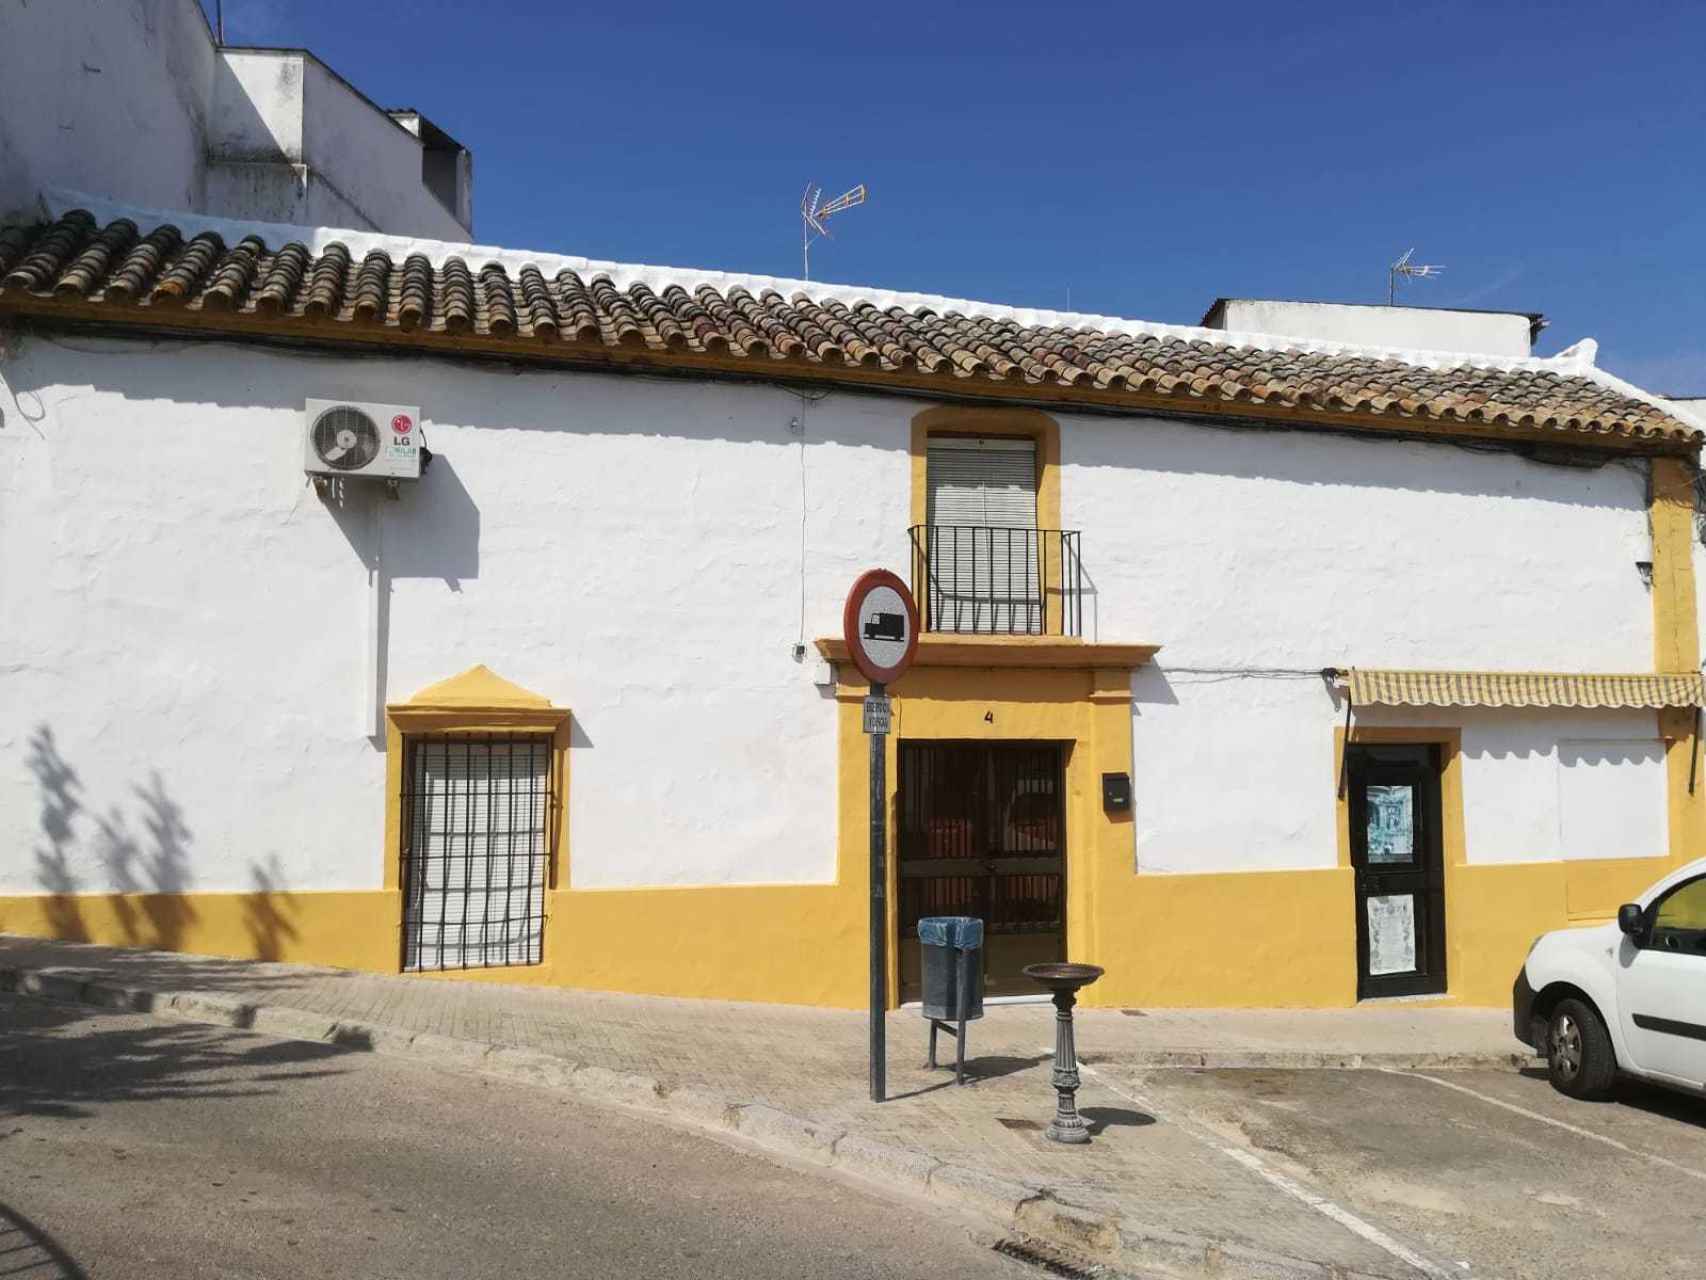 Antigua casa en El Carpio (Córdoba) en la que residía la familia Villarejo Pérez. En el portón derecho, Pedro Villarejo, padre del policía encarcelado, tenía una droguería.